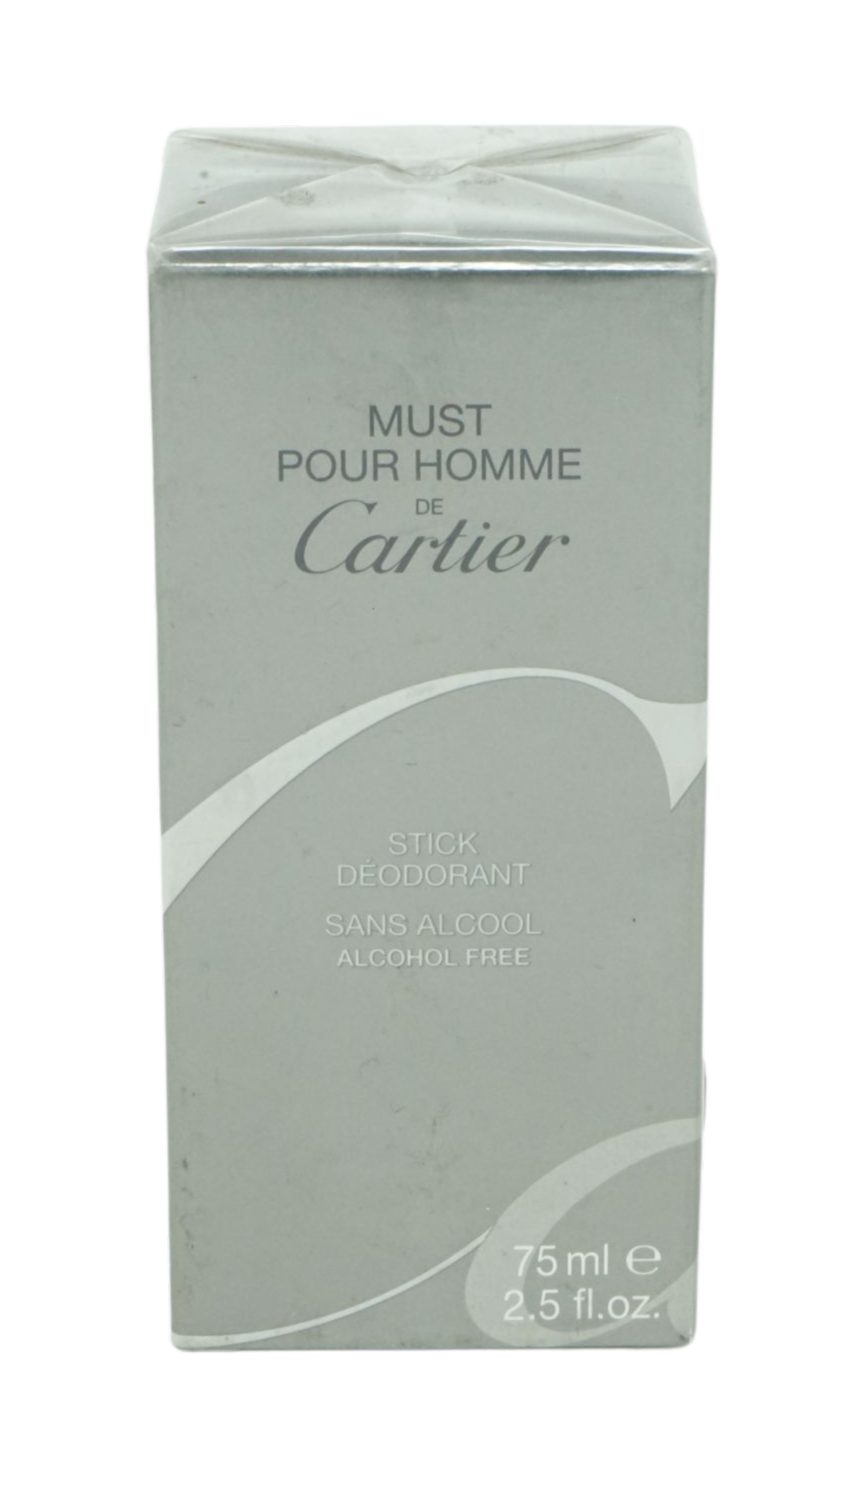 Cartier Körperpflegeduft Cartier 75ml Stick Deodorant